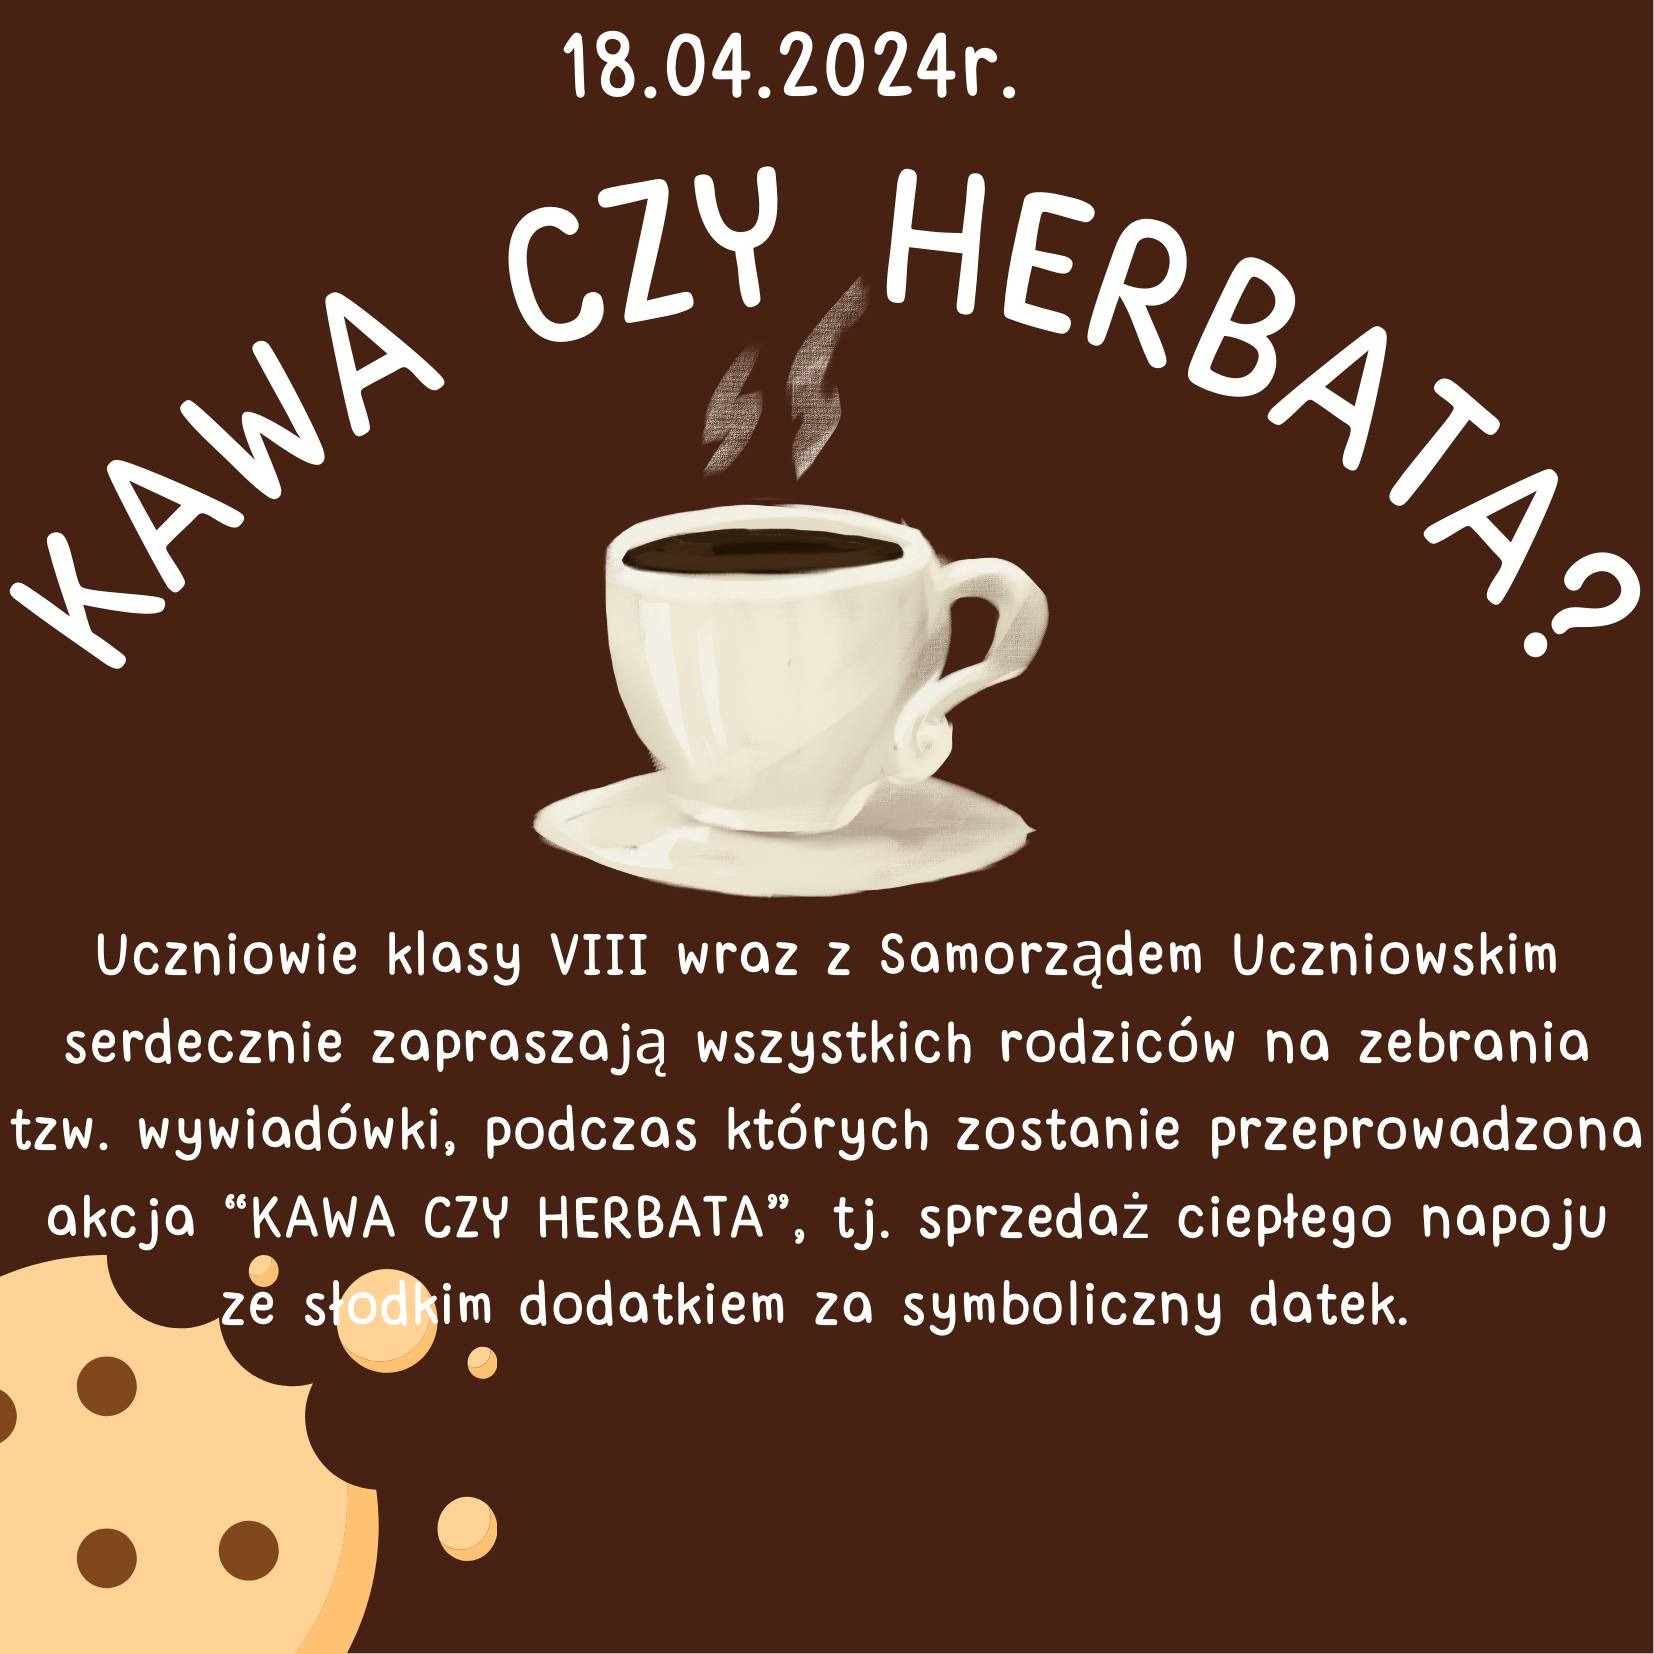 Serdecznie zapraszamy do udziału w akcji "Kawa czy herbata", która odbędzie się 18 kwietnia tj. czwartek podczas zebrań tzw. wywiadówek. ☕🍪 - Obrazek 1